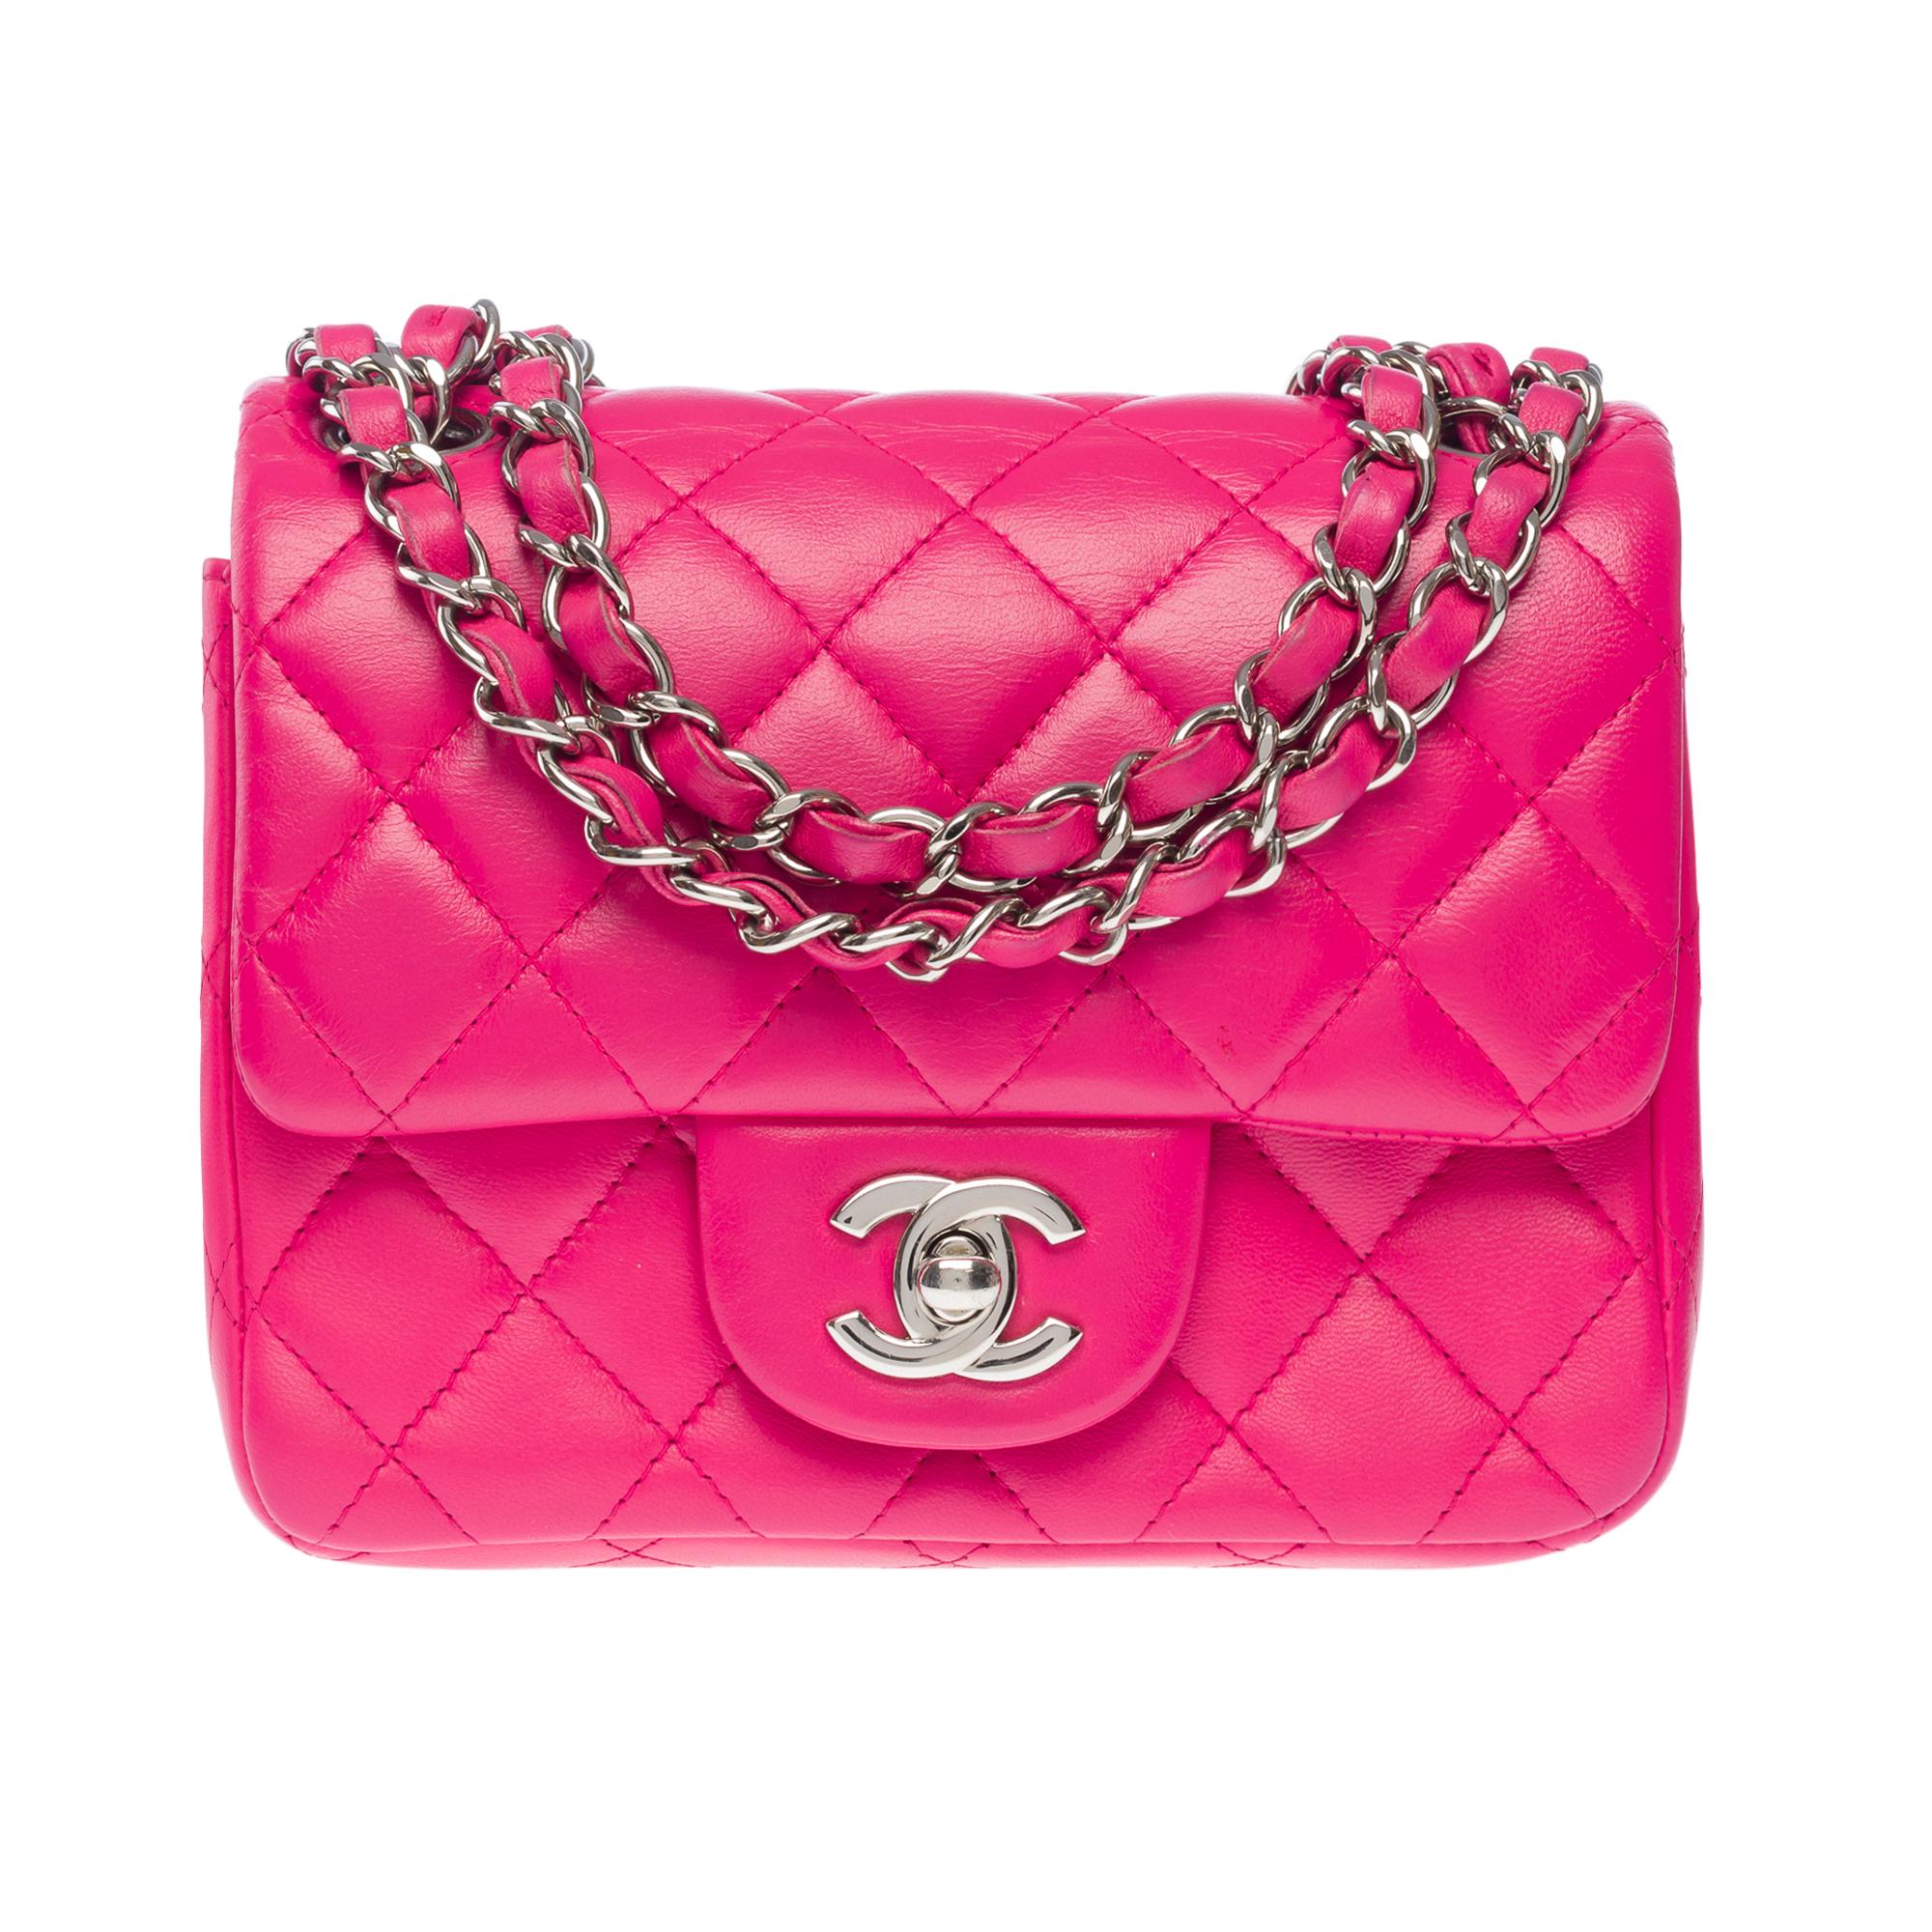 Außergewöhnliche Chanel Mini Timeless Überschlagtasche aus rosa gestepptem Leder, silberner Metallkettengriff mit rosa Leder verflochten für Schulter oder Crossbody

Verschluss mit Klappe aus silbernem Metall
Eine aufgesetzte Tasche auf der